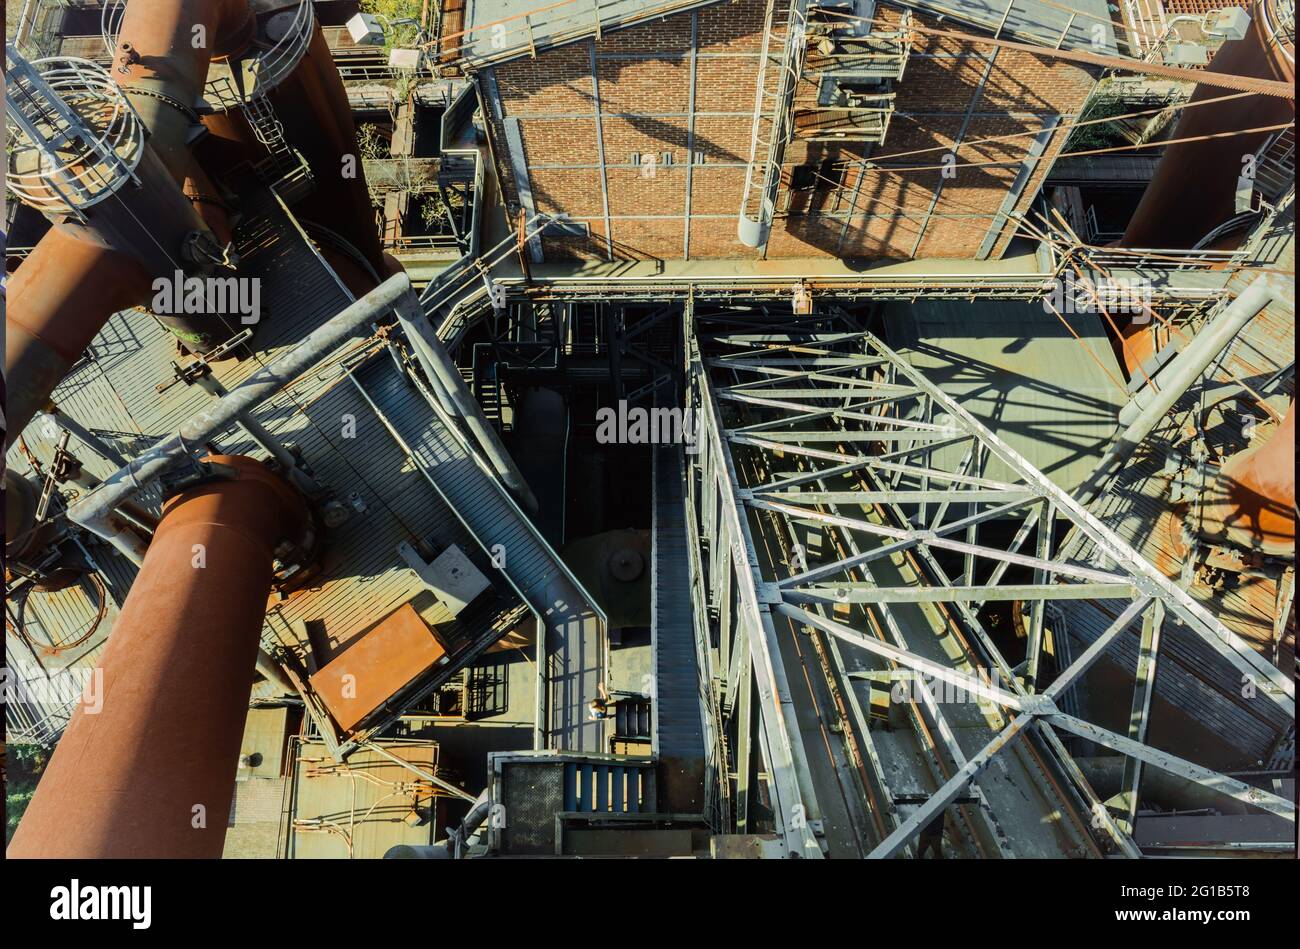 Zeche Zollverein und Landschaftspark Duisburg Nord fotografiert aus der Vogelperspektive. Stahlgerüst, abgelichtet als Monster aus Eisen und Stahl. Stock Photo